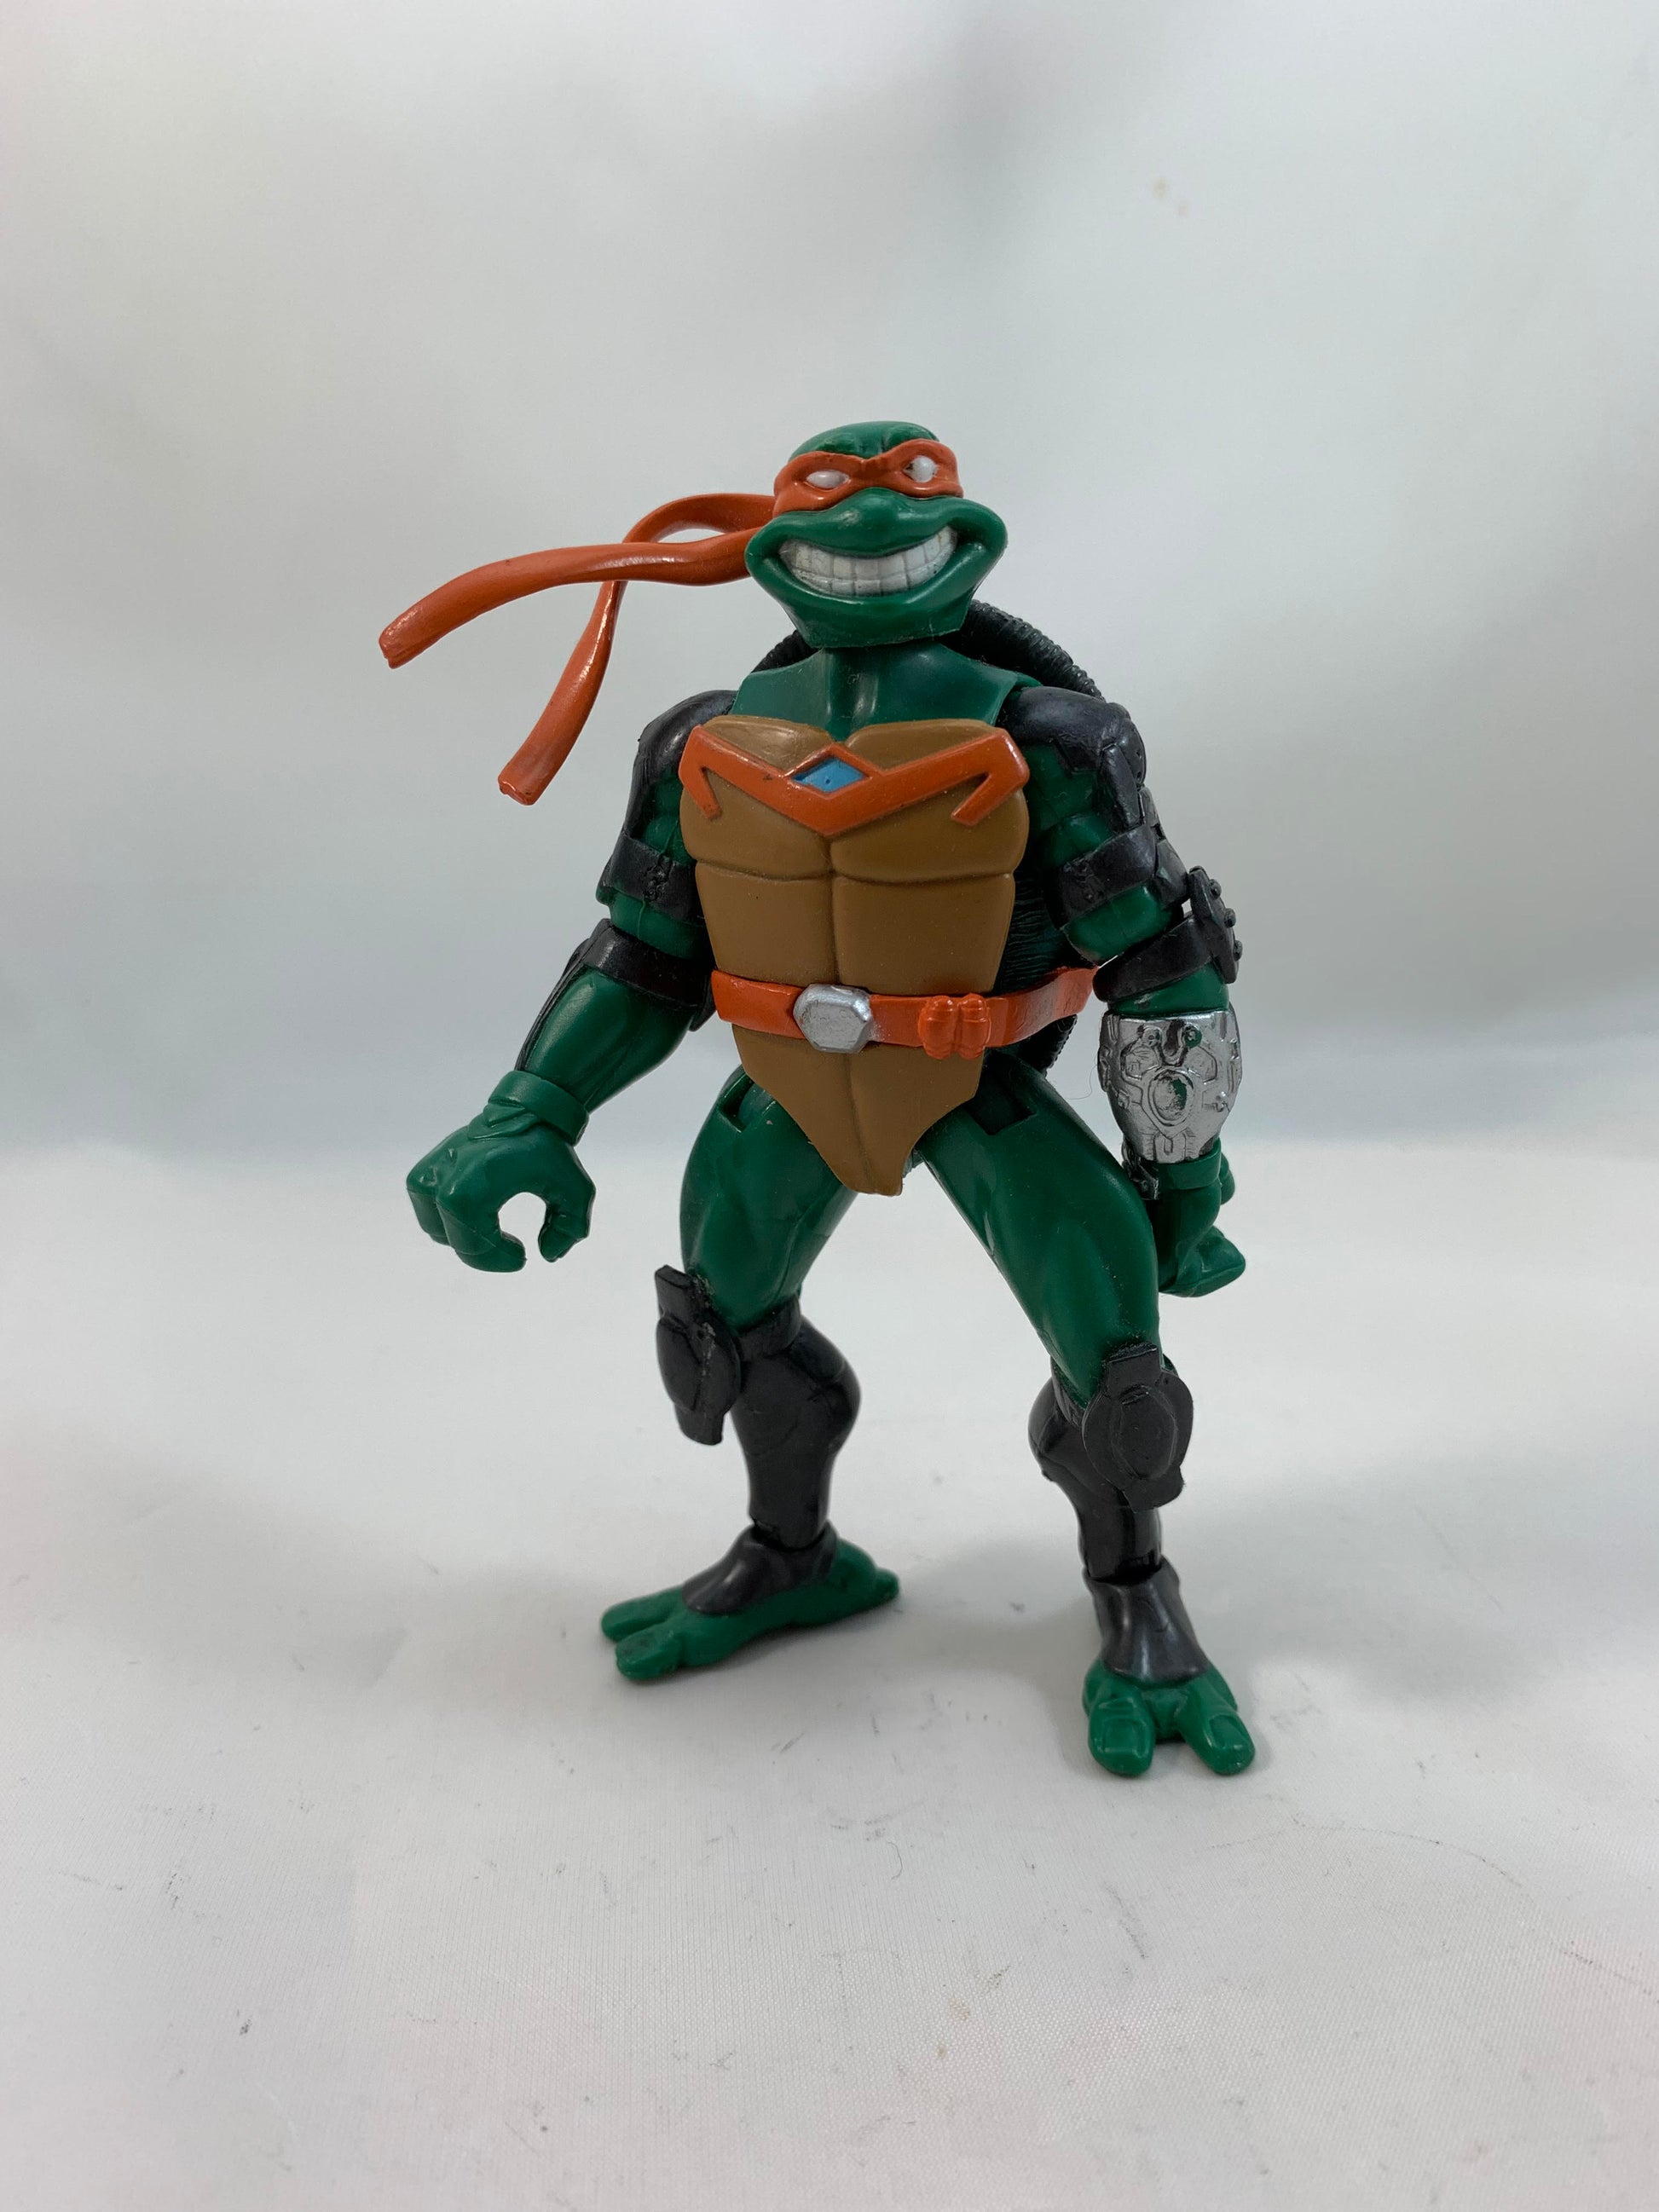 Playmates Viacom Teenage Mutant Ninja Turtles TMNT Fast Forward Series Michelangelo 2006 - Loose